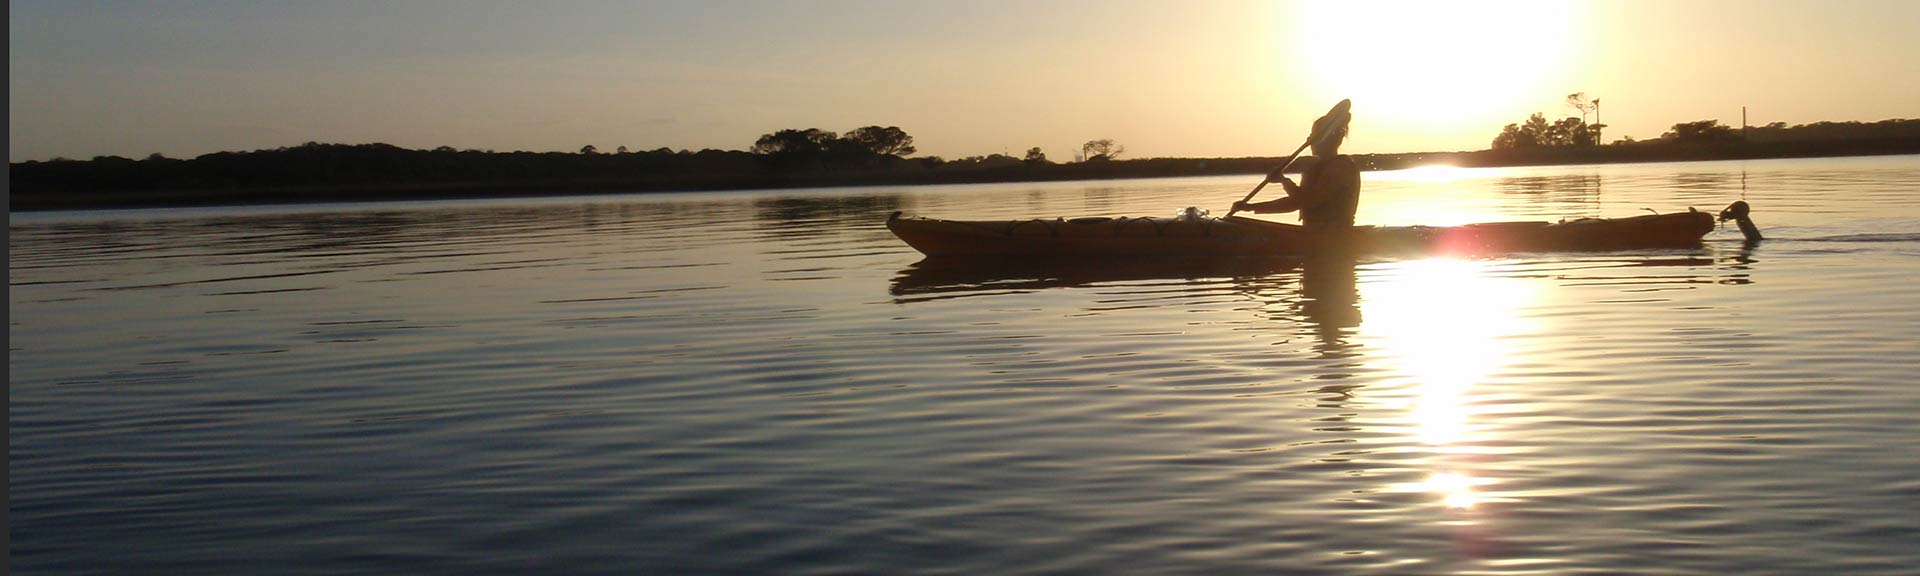 silhouette of canoer at sunset